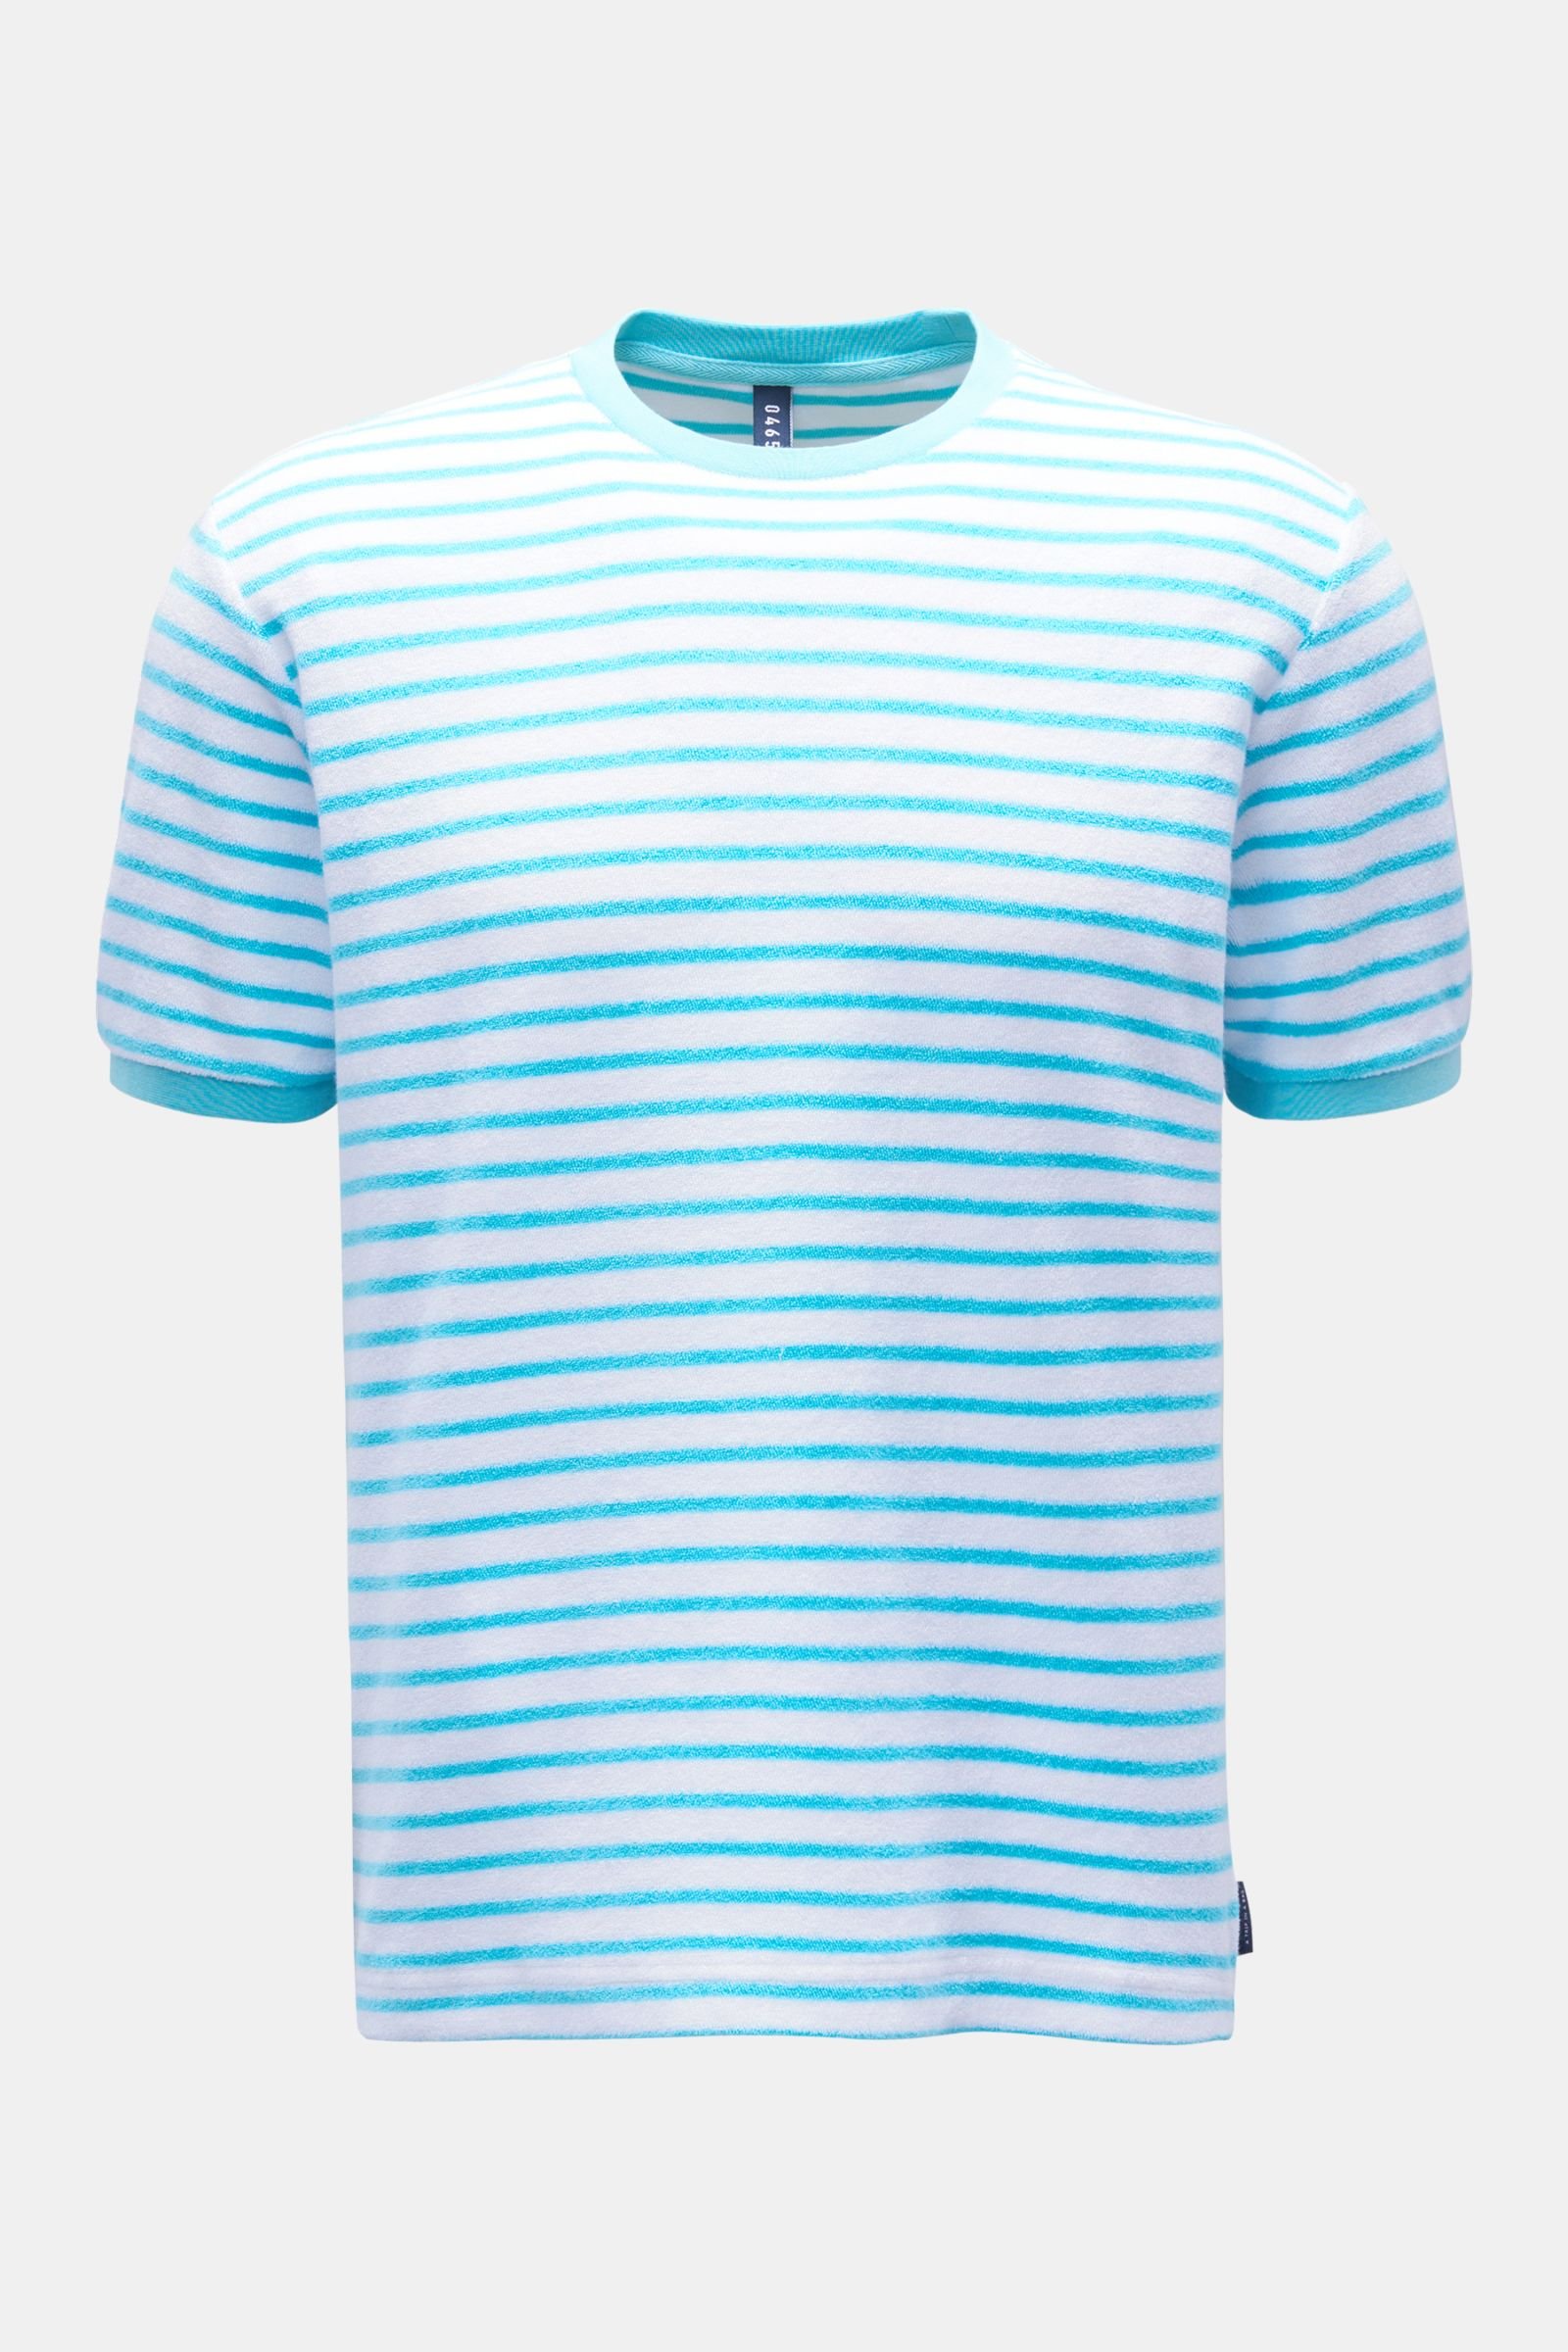 Terry crew neck T-shirt 'Terry Stripe Tee' turquoise/white striped